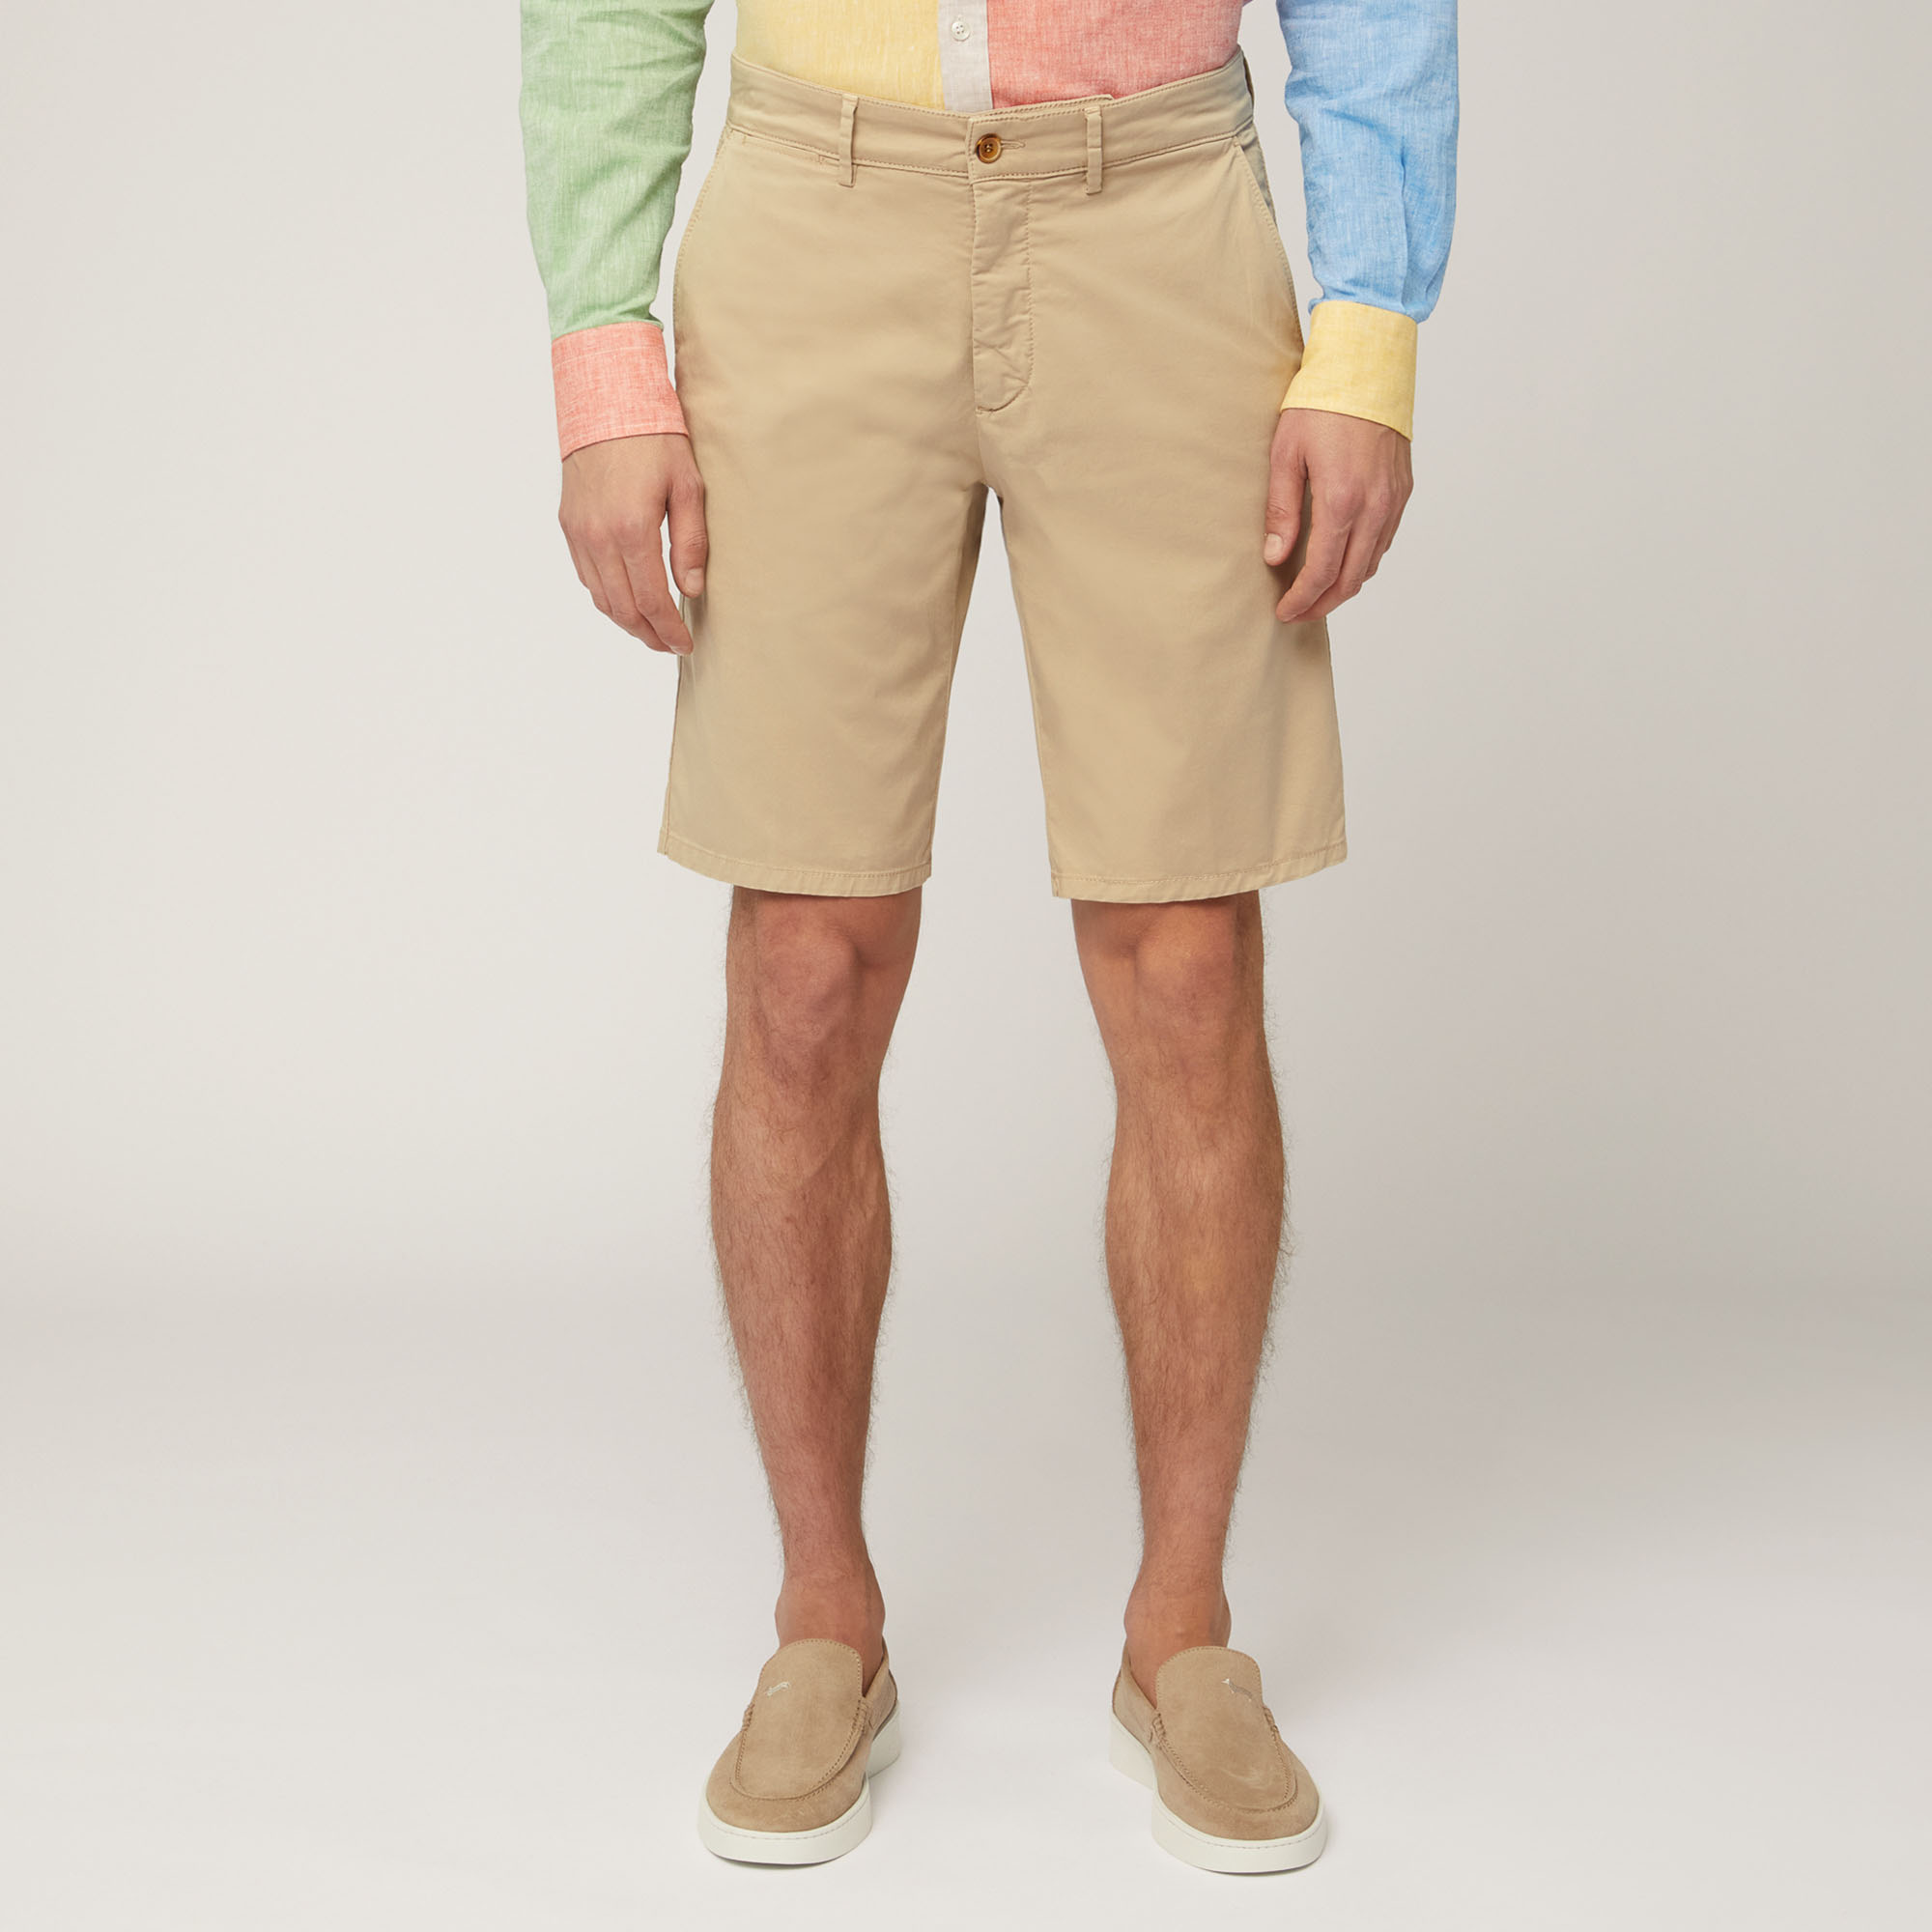 Regular Fit Bermuda Shorts, Beige, large image number 0